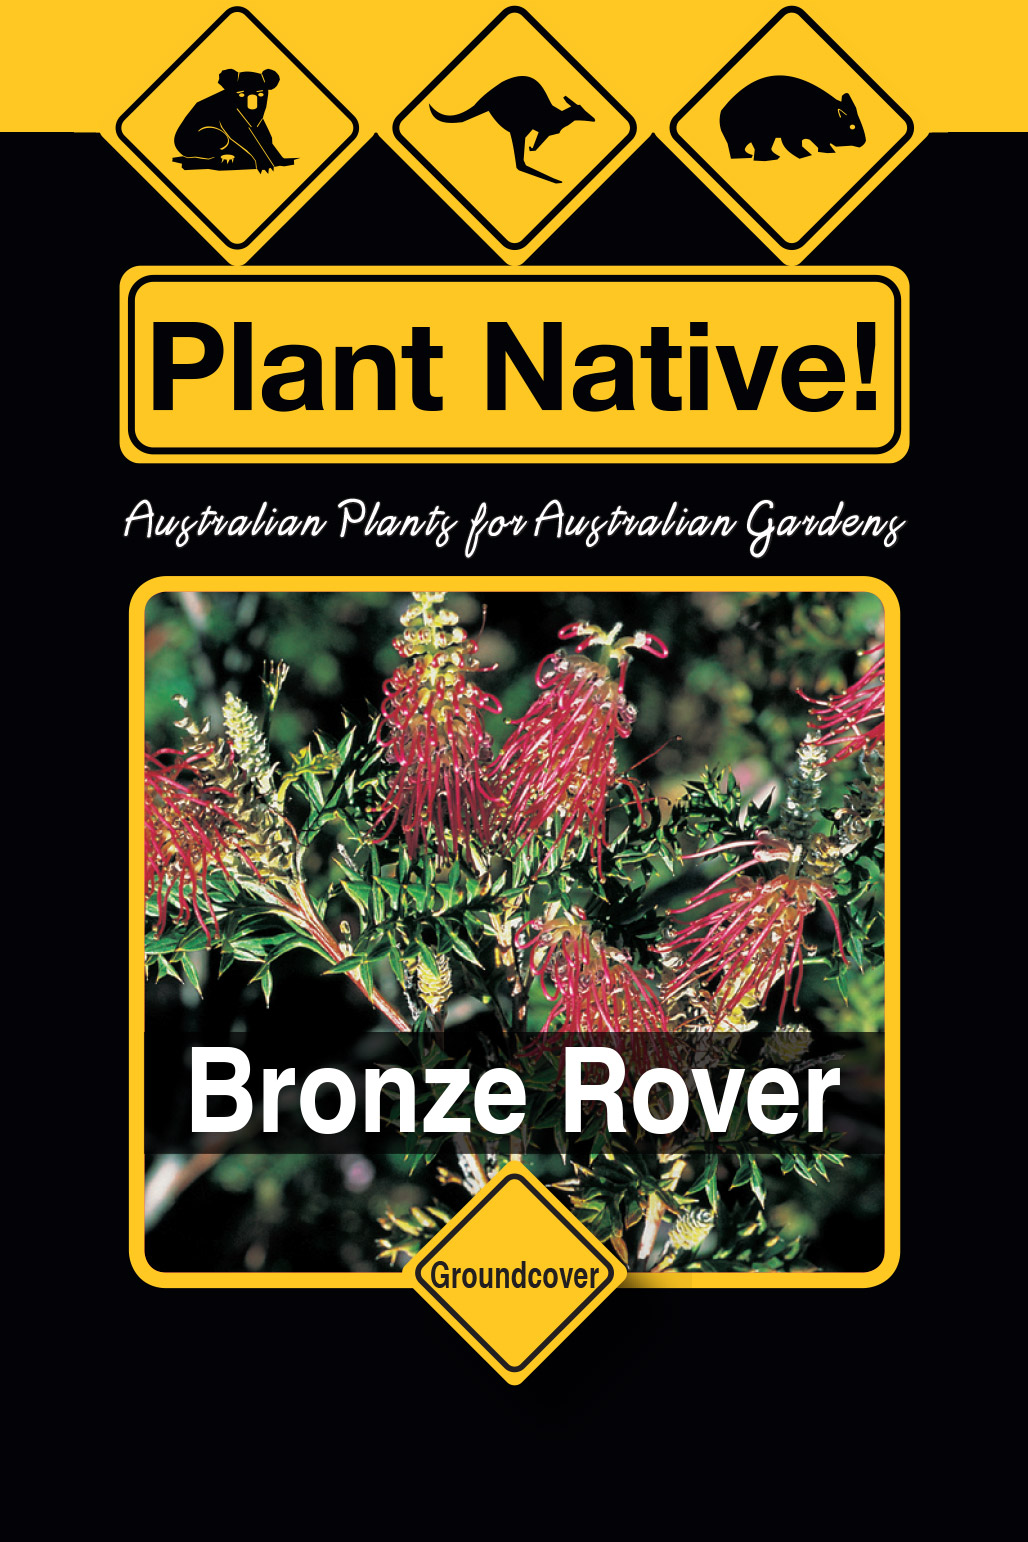 Bronze Rover - Plant Native!